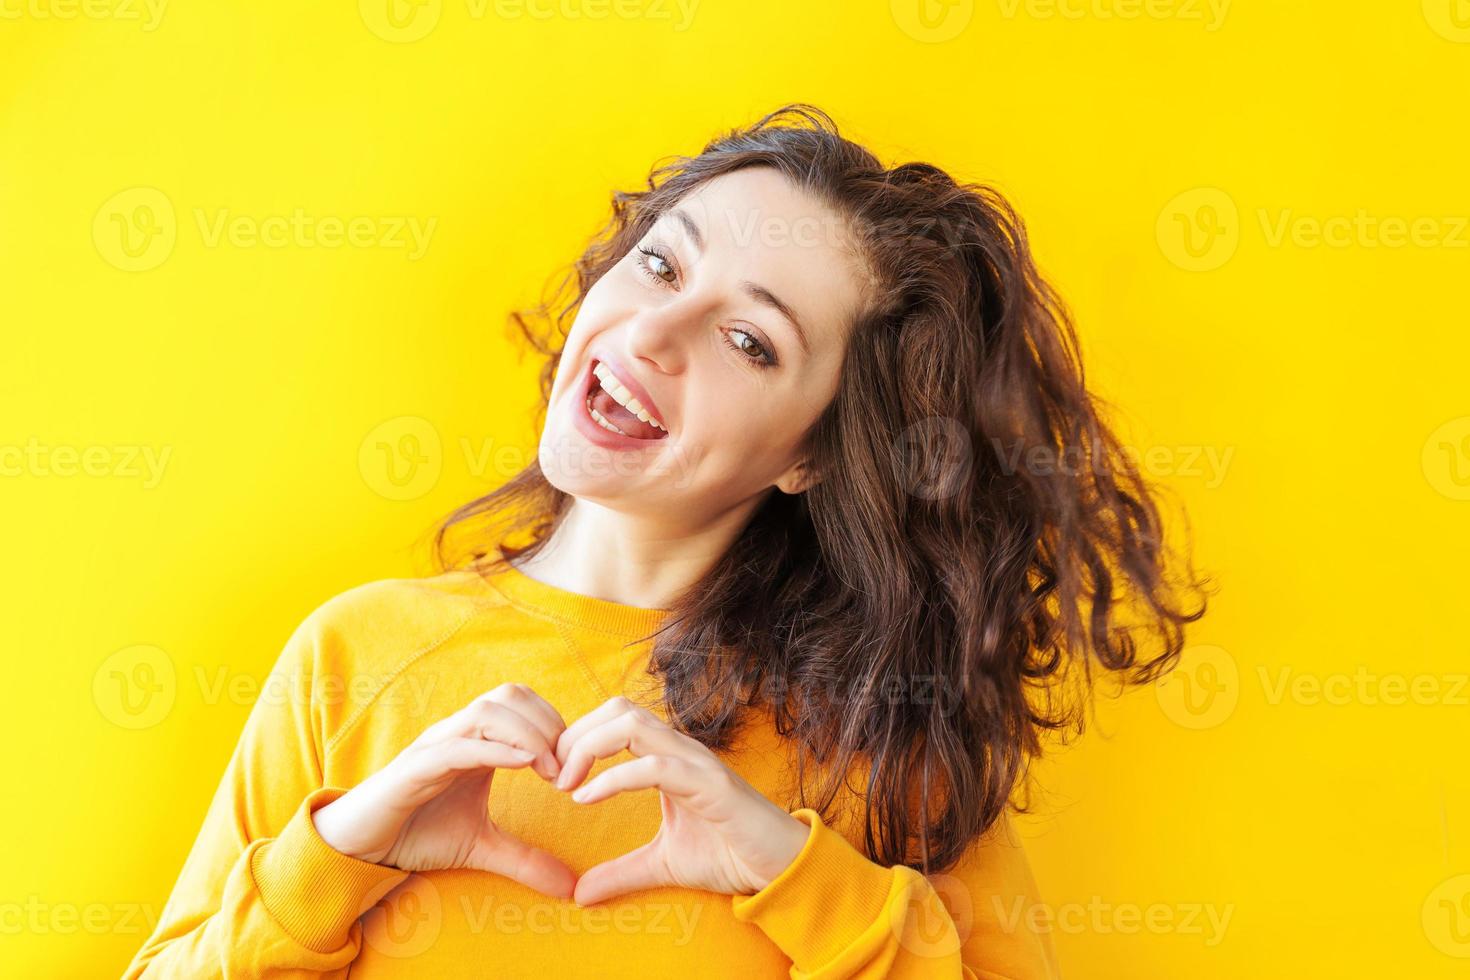 kärlek, hjärta form, fred. skönhet porträtt ung Lycklig positiv kvinna som visar hjärta tecken med händer på gul bakgrund isolerat. europeisk flicka. positiv mänsklig känsla ansiktsbehandling uttryck kropp språk. foto